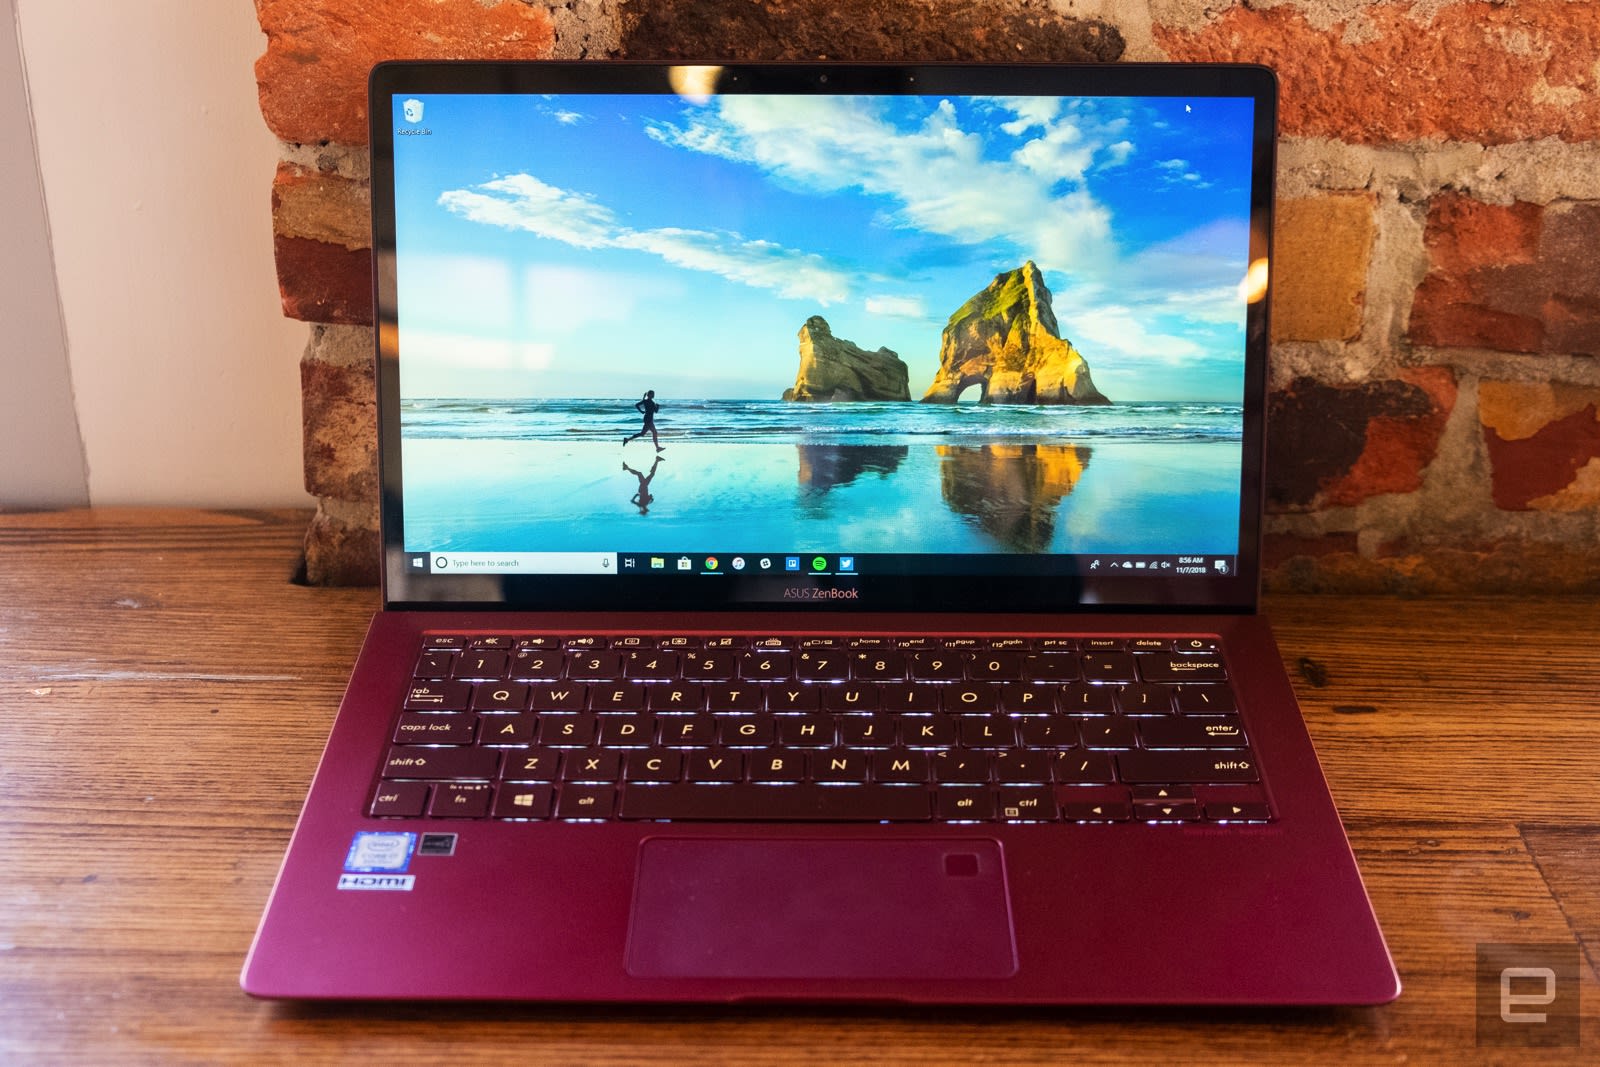 ASUS ZenBook S review: Just a decent laptop